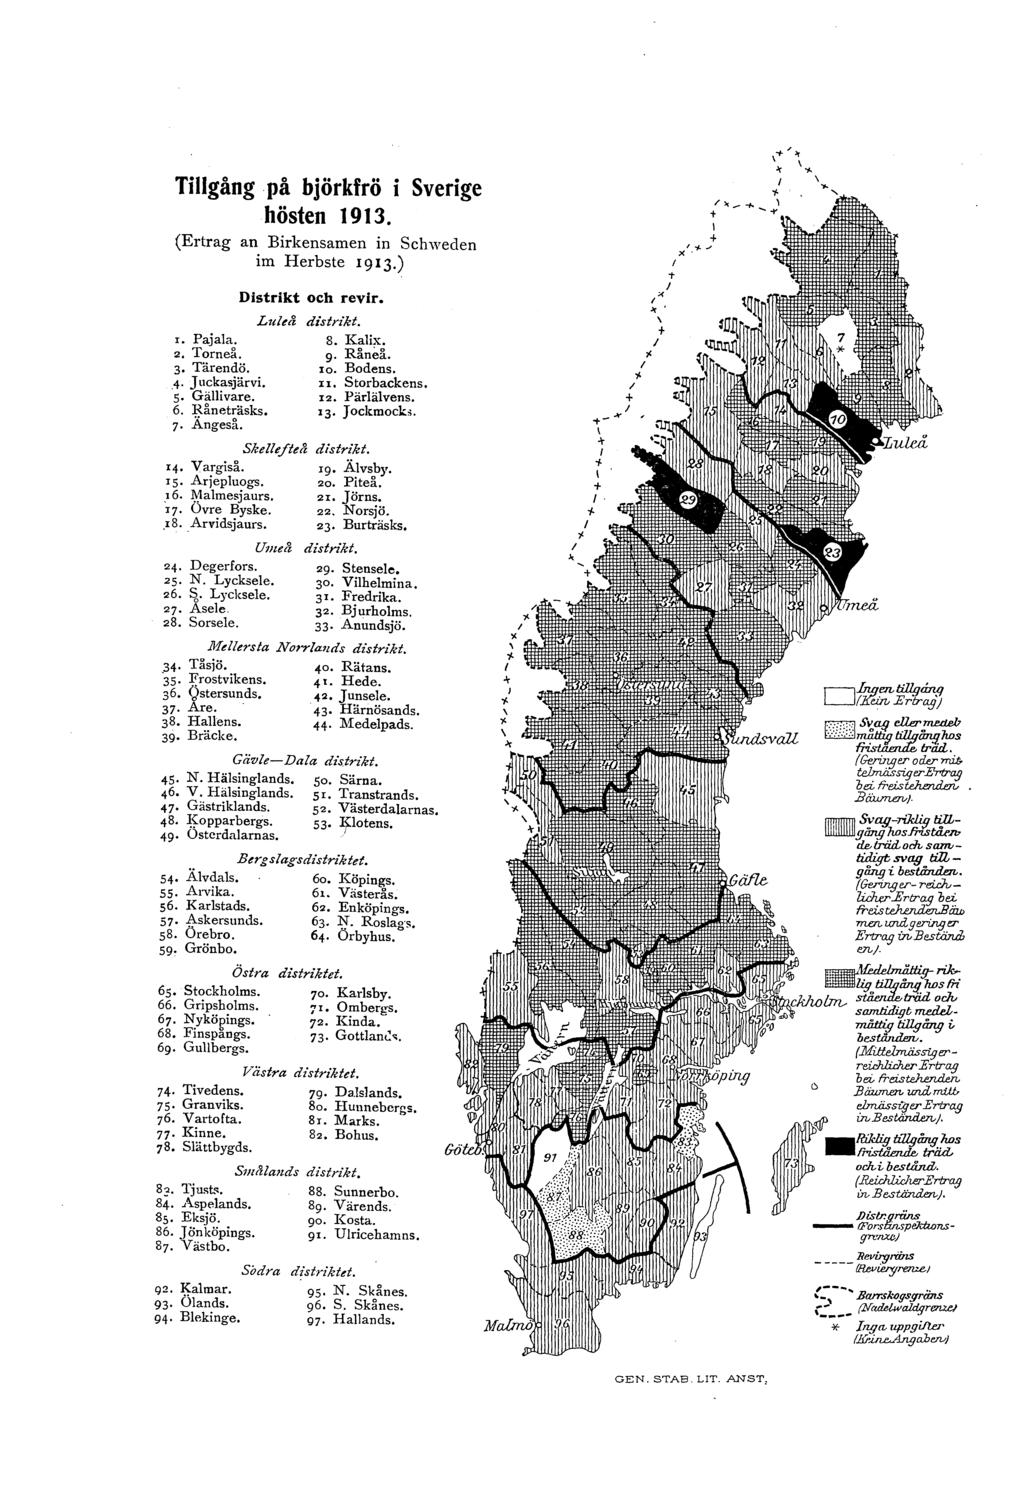 Tigång på björkfrö i Sverige hösten 1913. (Ertrag an Birkensamen in Schweden im Herbste 1913.) Lueå r. Pajaa. 2. Trneå. 3 Tärendö. 4 J uckasjärvi. 5 Gäivare. 6. Rneträsks. 7 Ängeså. 14, Vargiså.